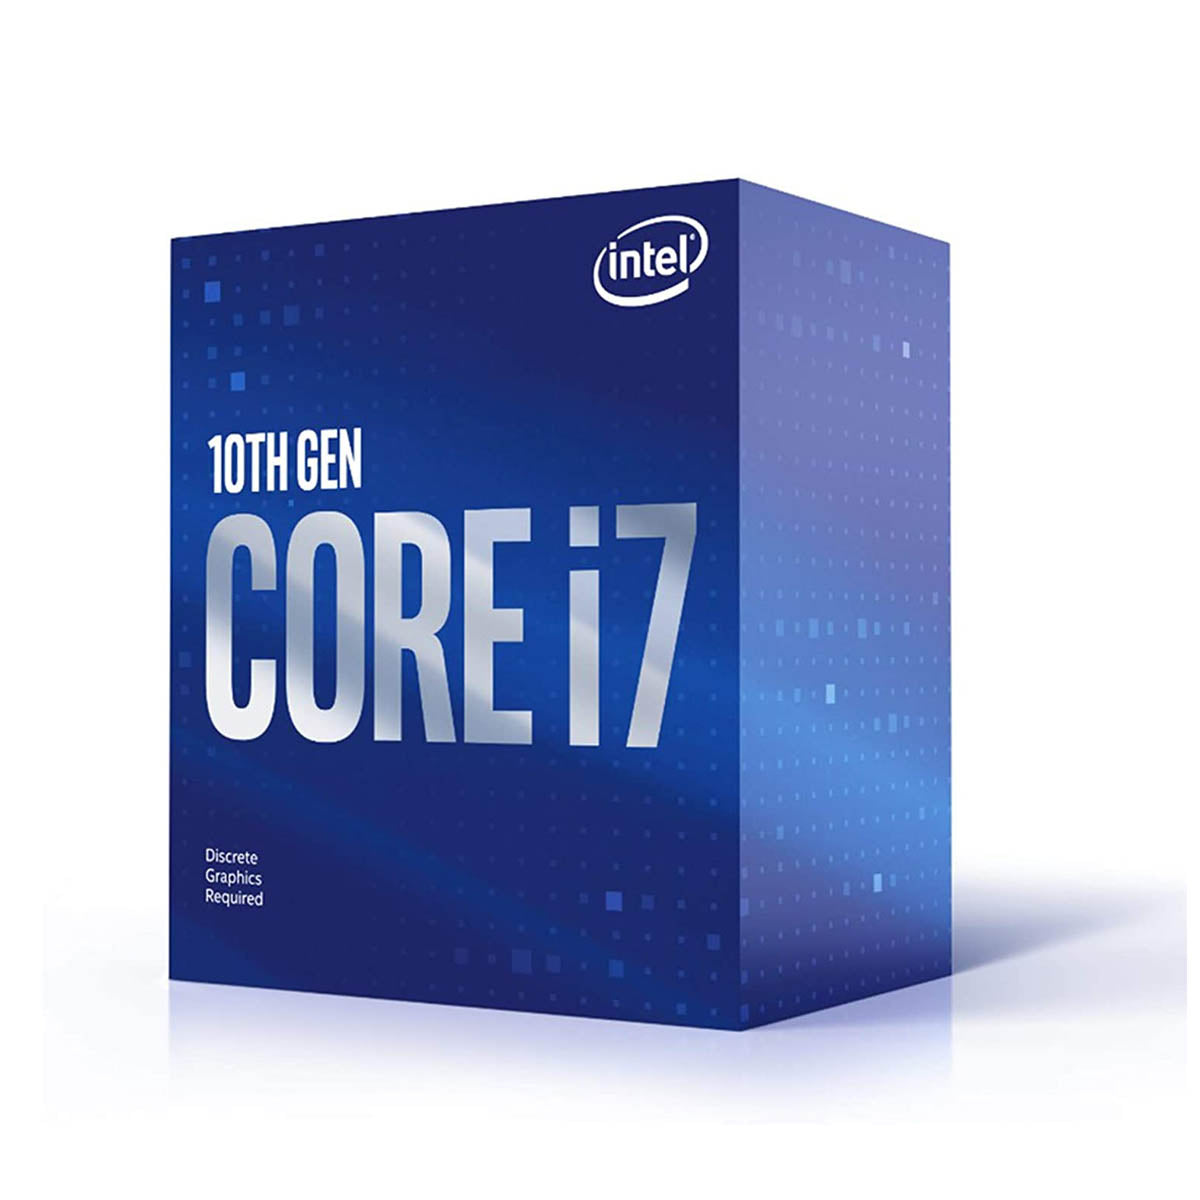 Intel Core i7-10700F LGA1200 Desktop Processor 8 Cores up to 4.80GHz 16MB Cache